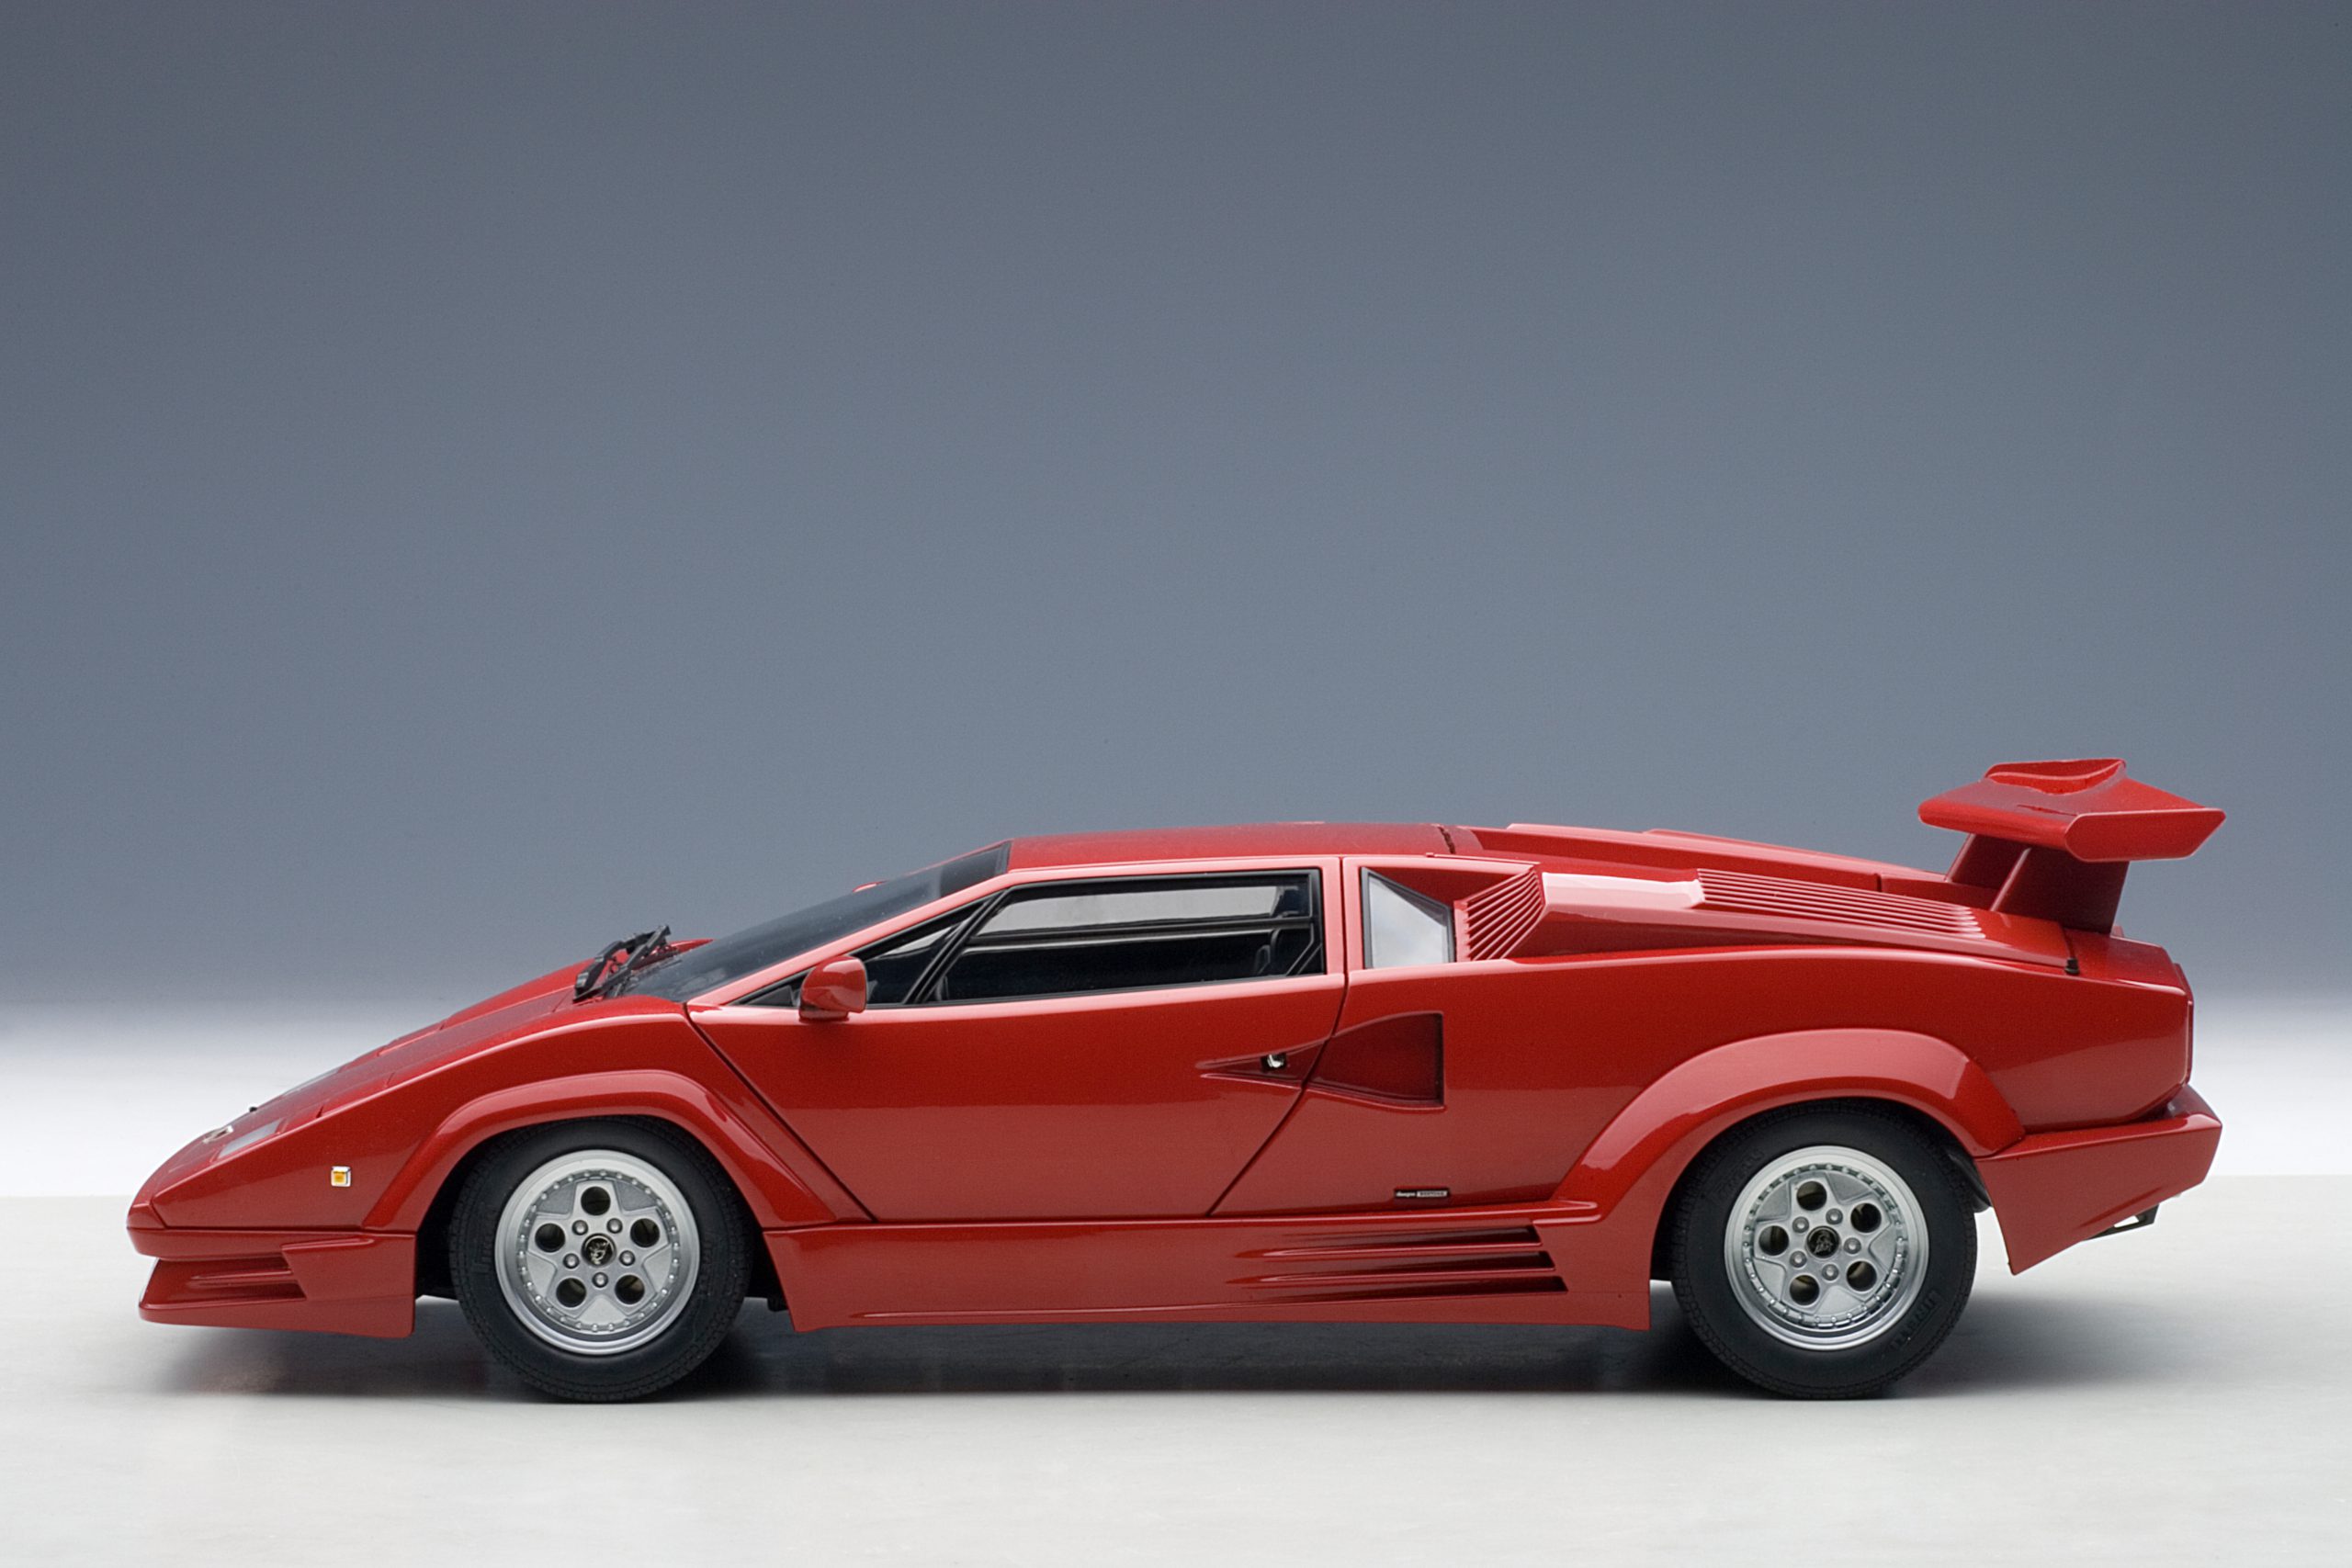 Lamborghini Countach 25th Anniversary Edition (Red) | AUTOart